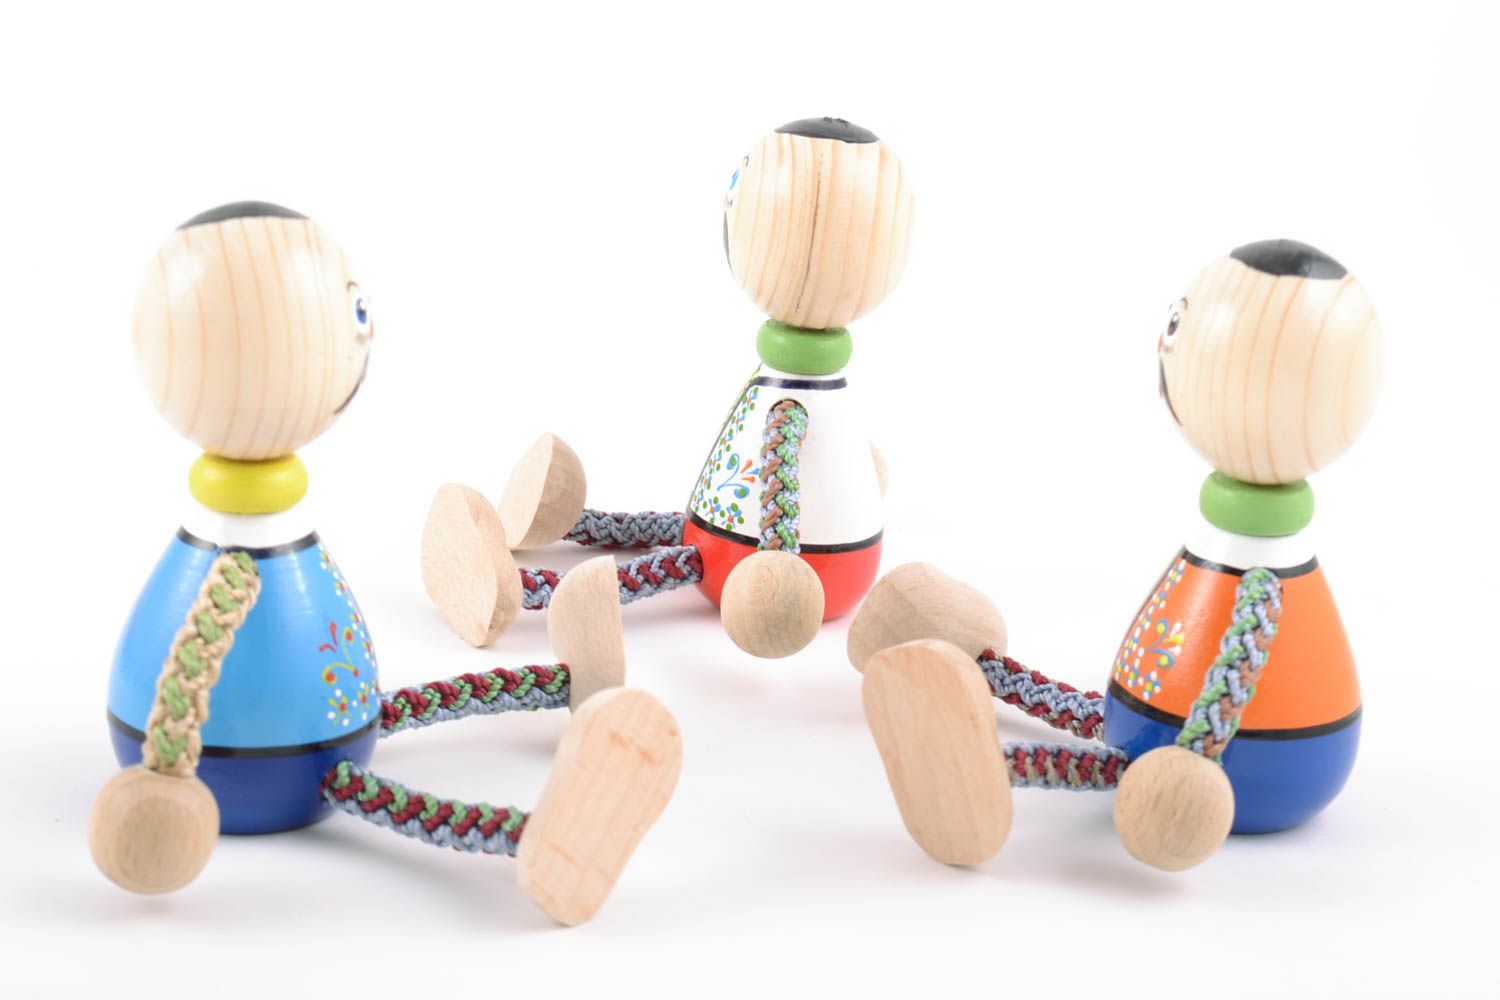 Игрушки из дерева ручной работы казаки три штуки цветные яркие расписные детские фото 2